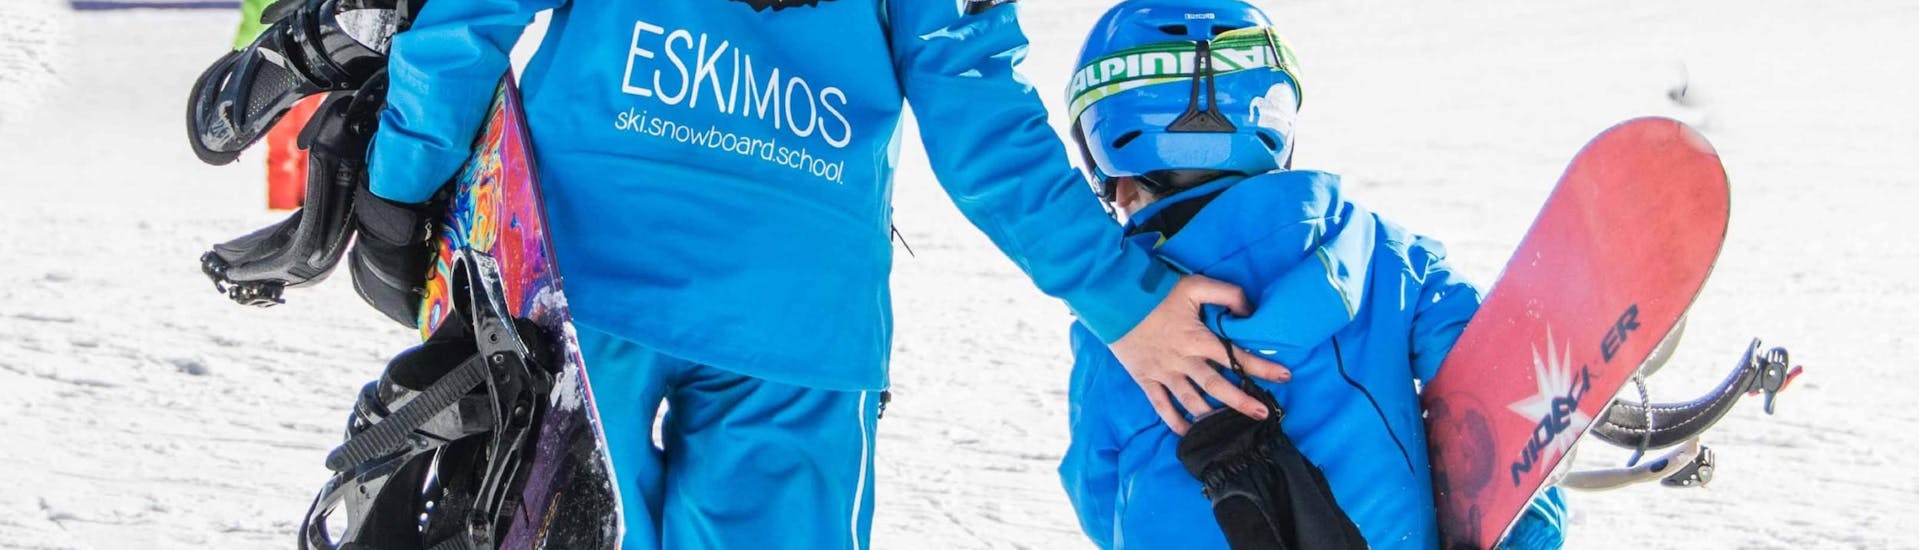 Ontdekkingssnowboardlessen (vanaf 6 jaar) voor beginners met Ski School ESKIMOS Saas-Fee.